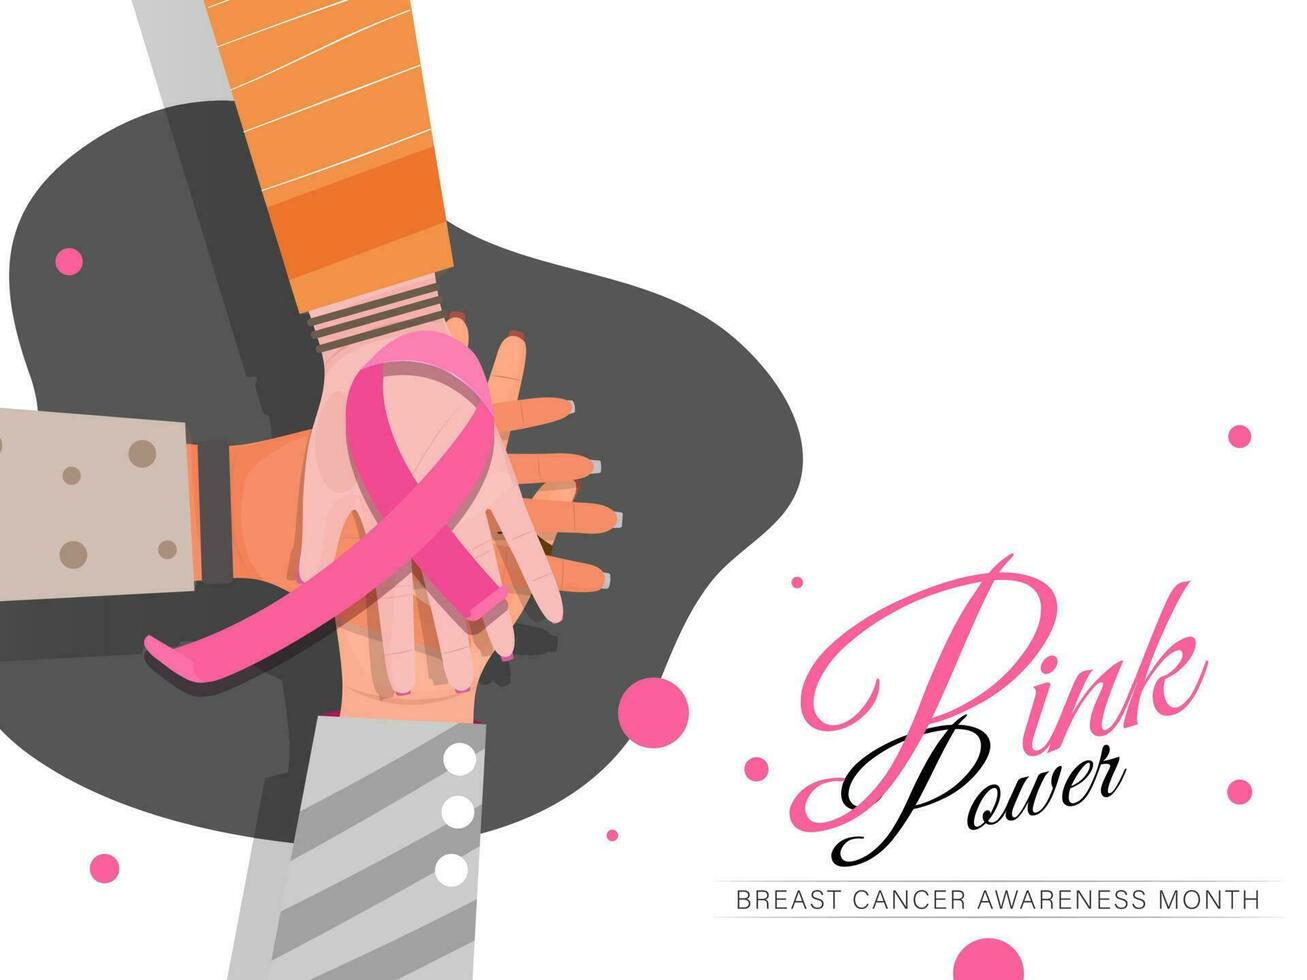 människor stödjande rosa band för bröst cancer medvetenhet månad begrepp. baner eller affisch design. vektor